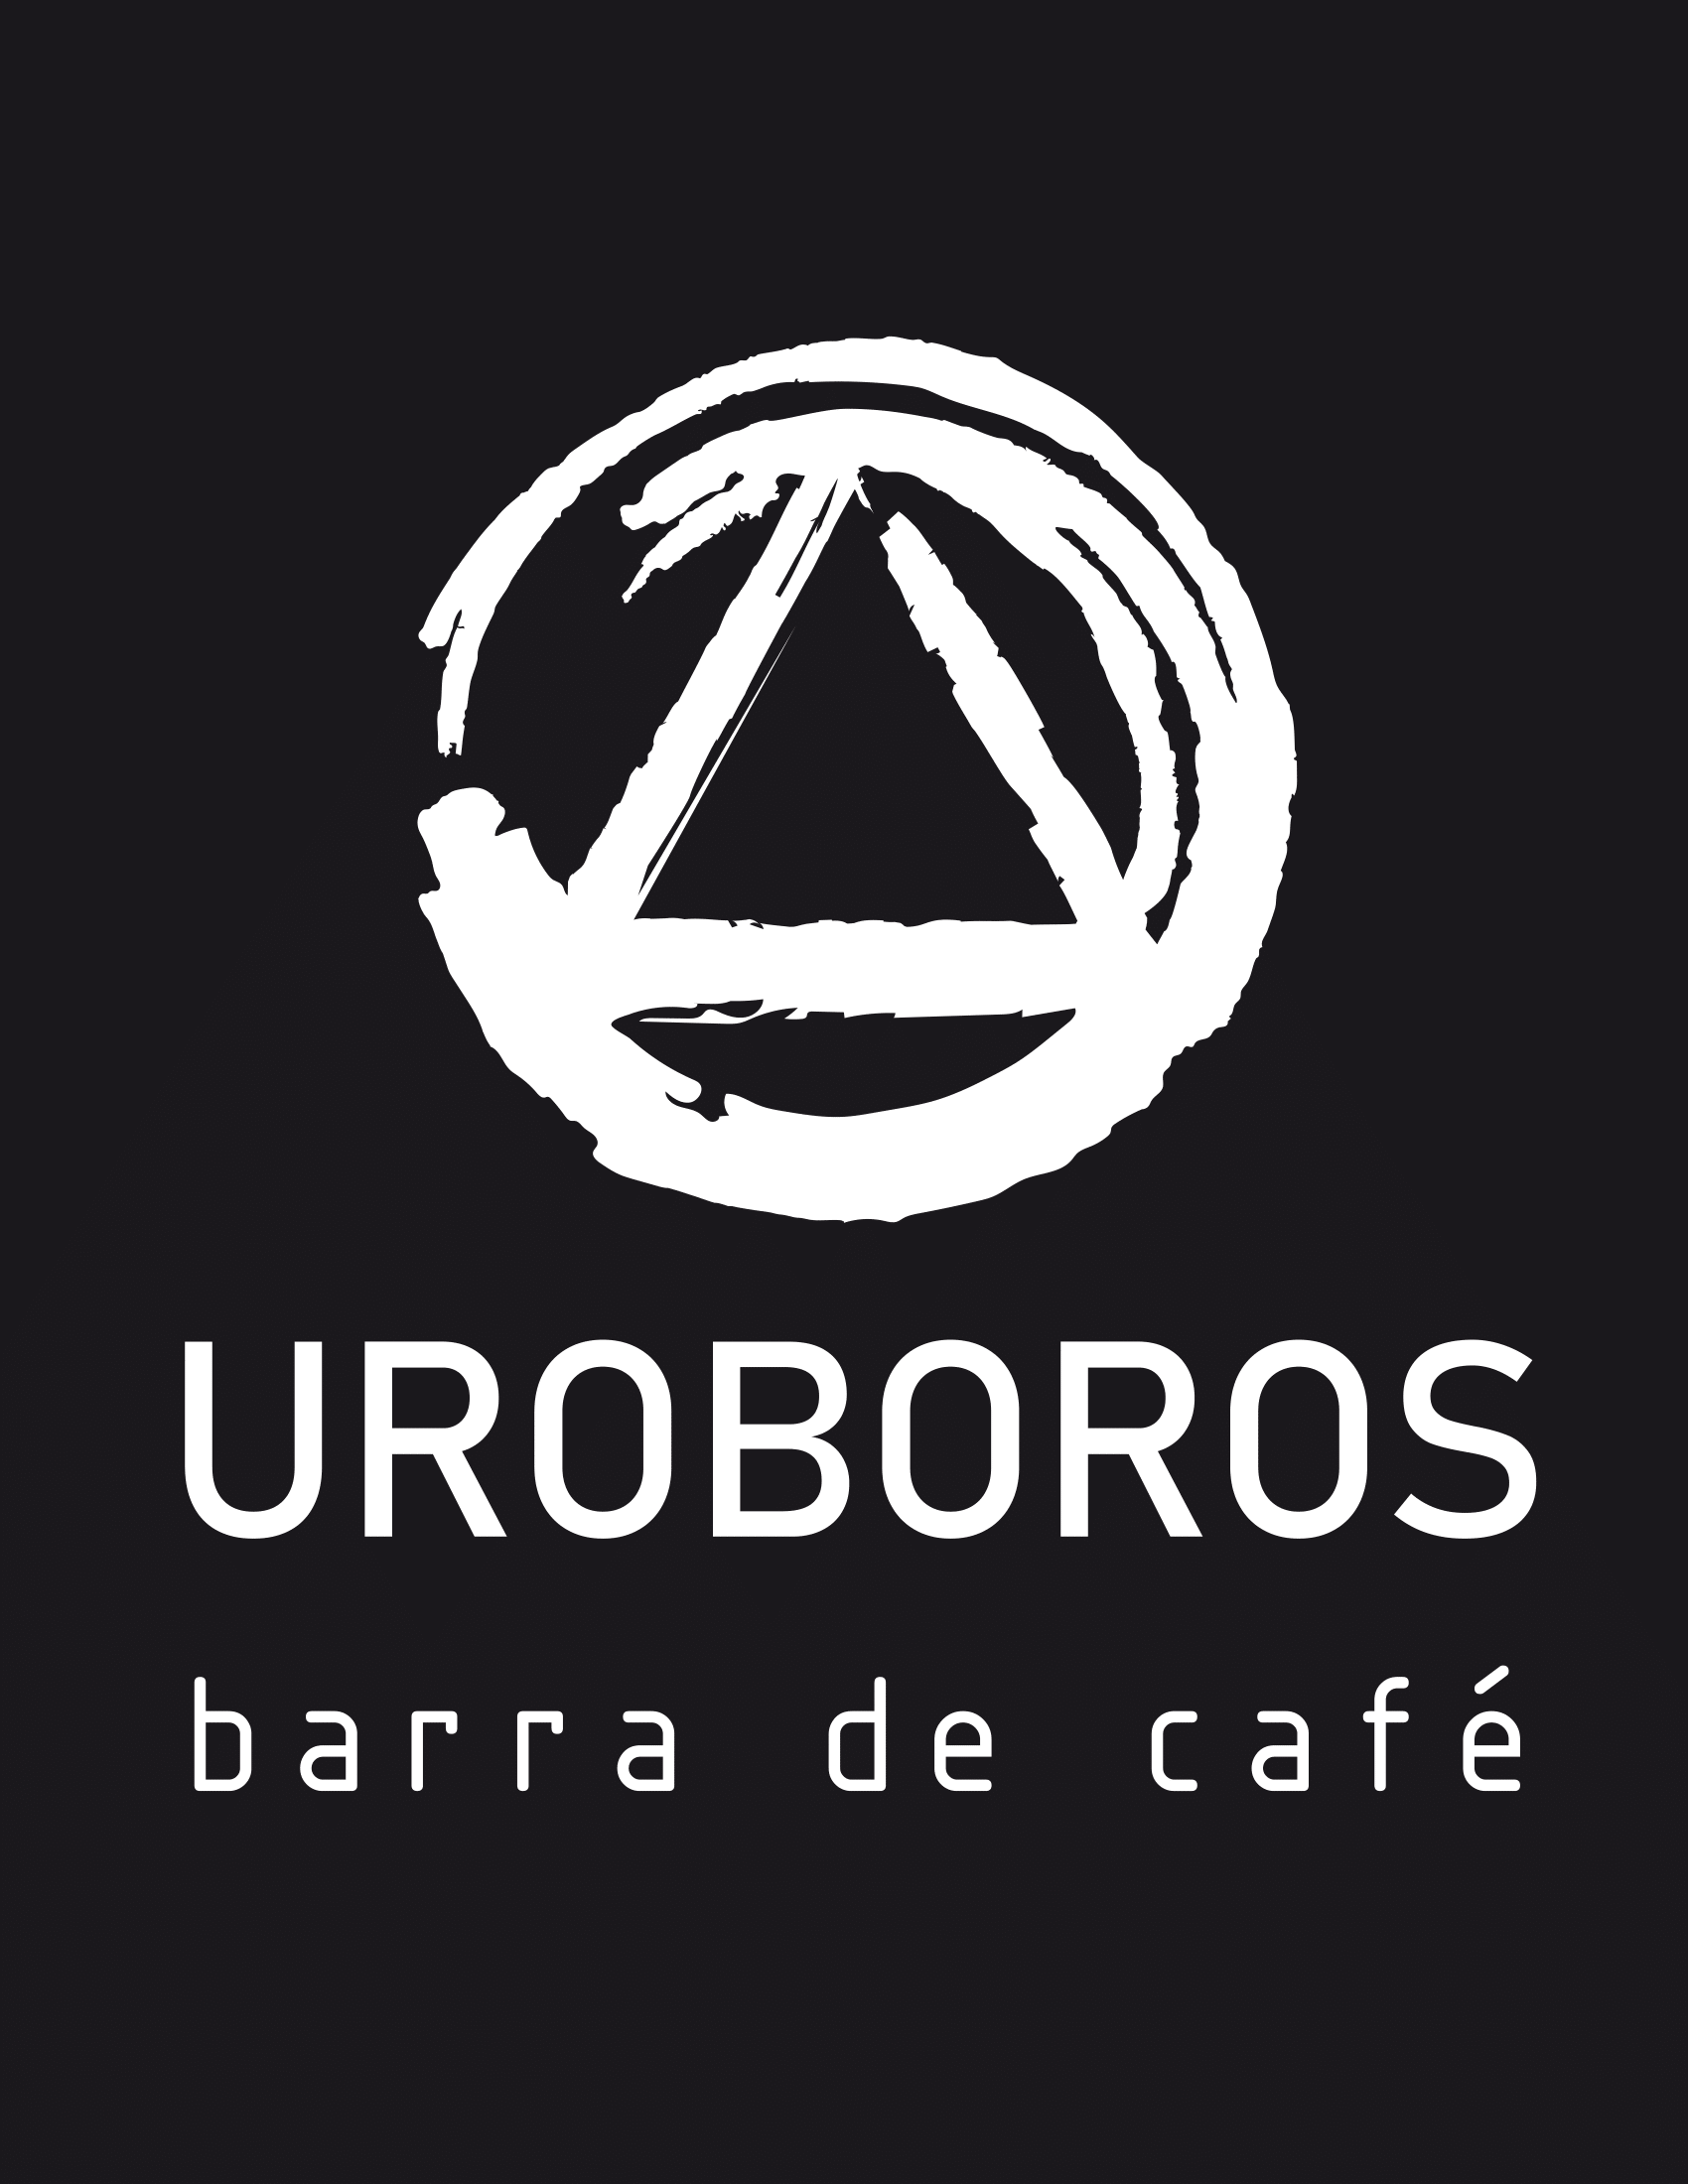 UROBOROS BARRA DE CAFÉ